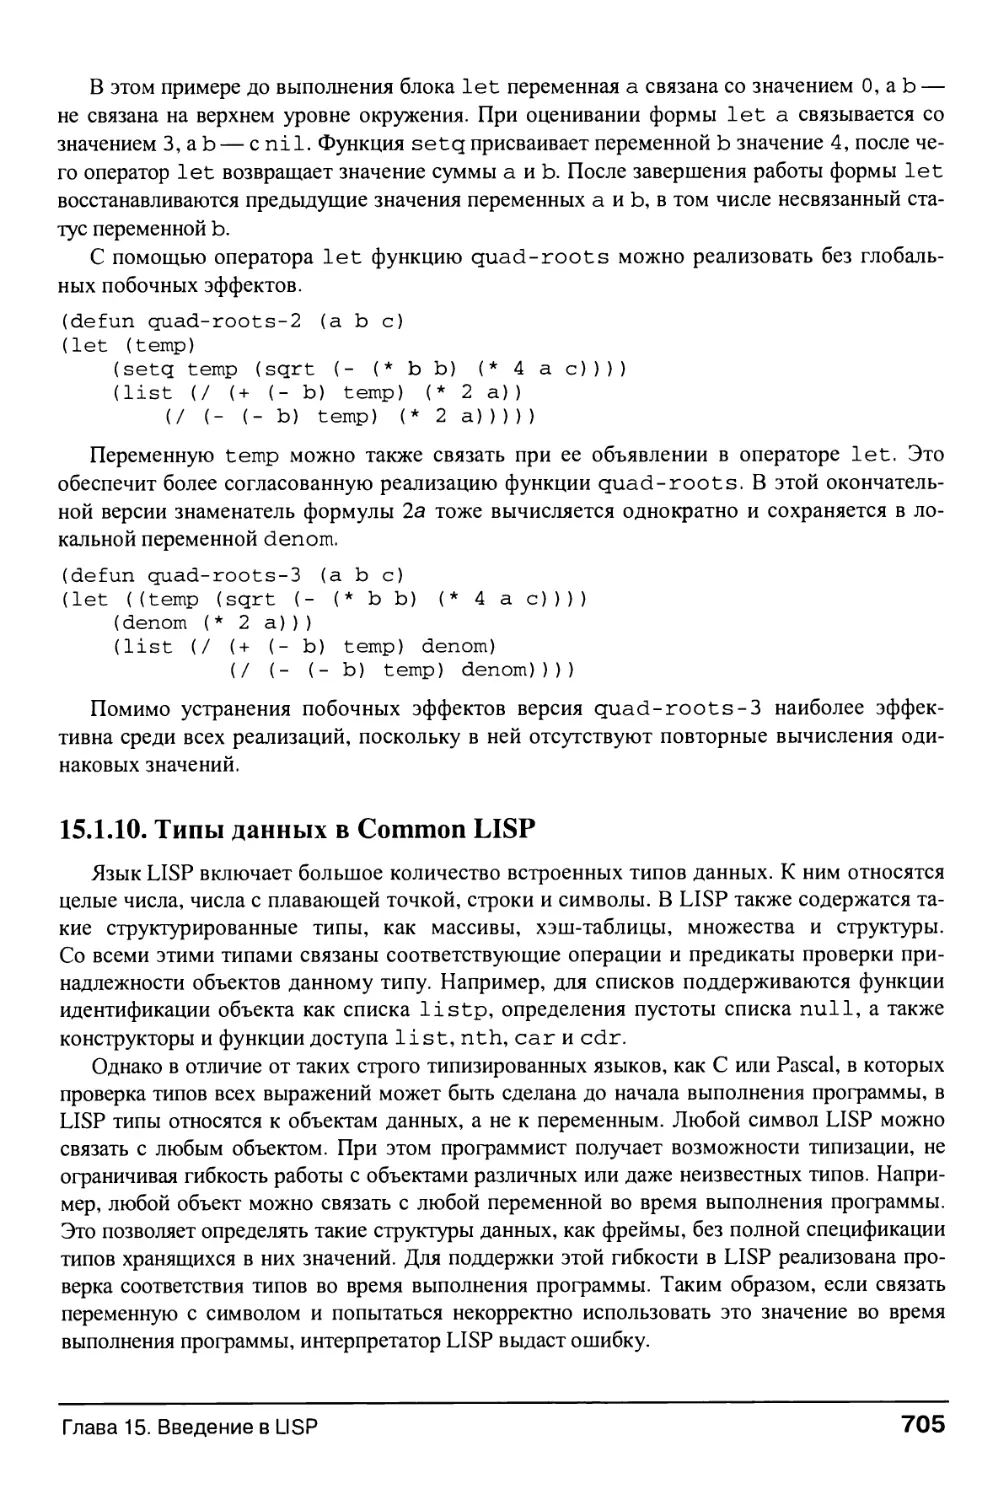 15.1.10. Типы данных в Common LISP